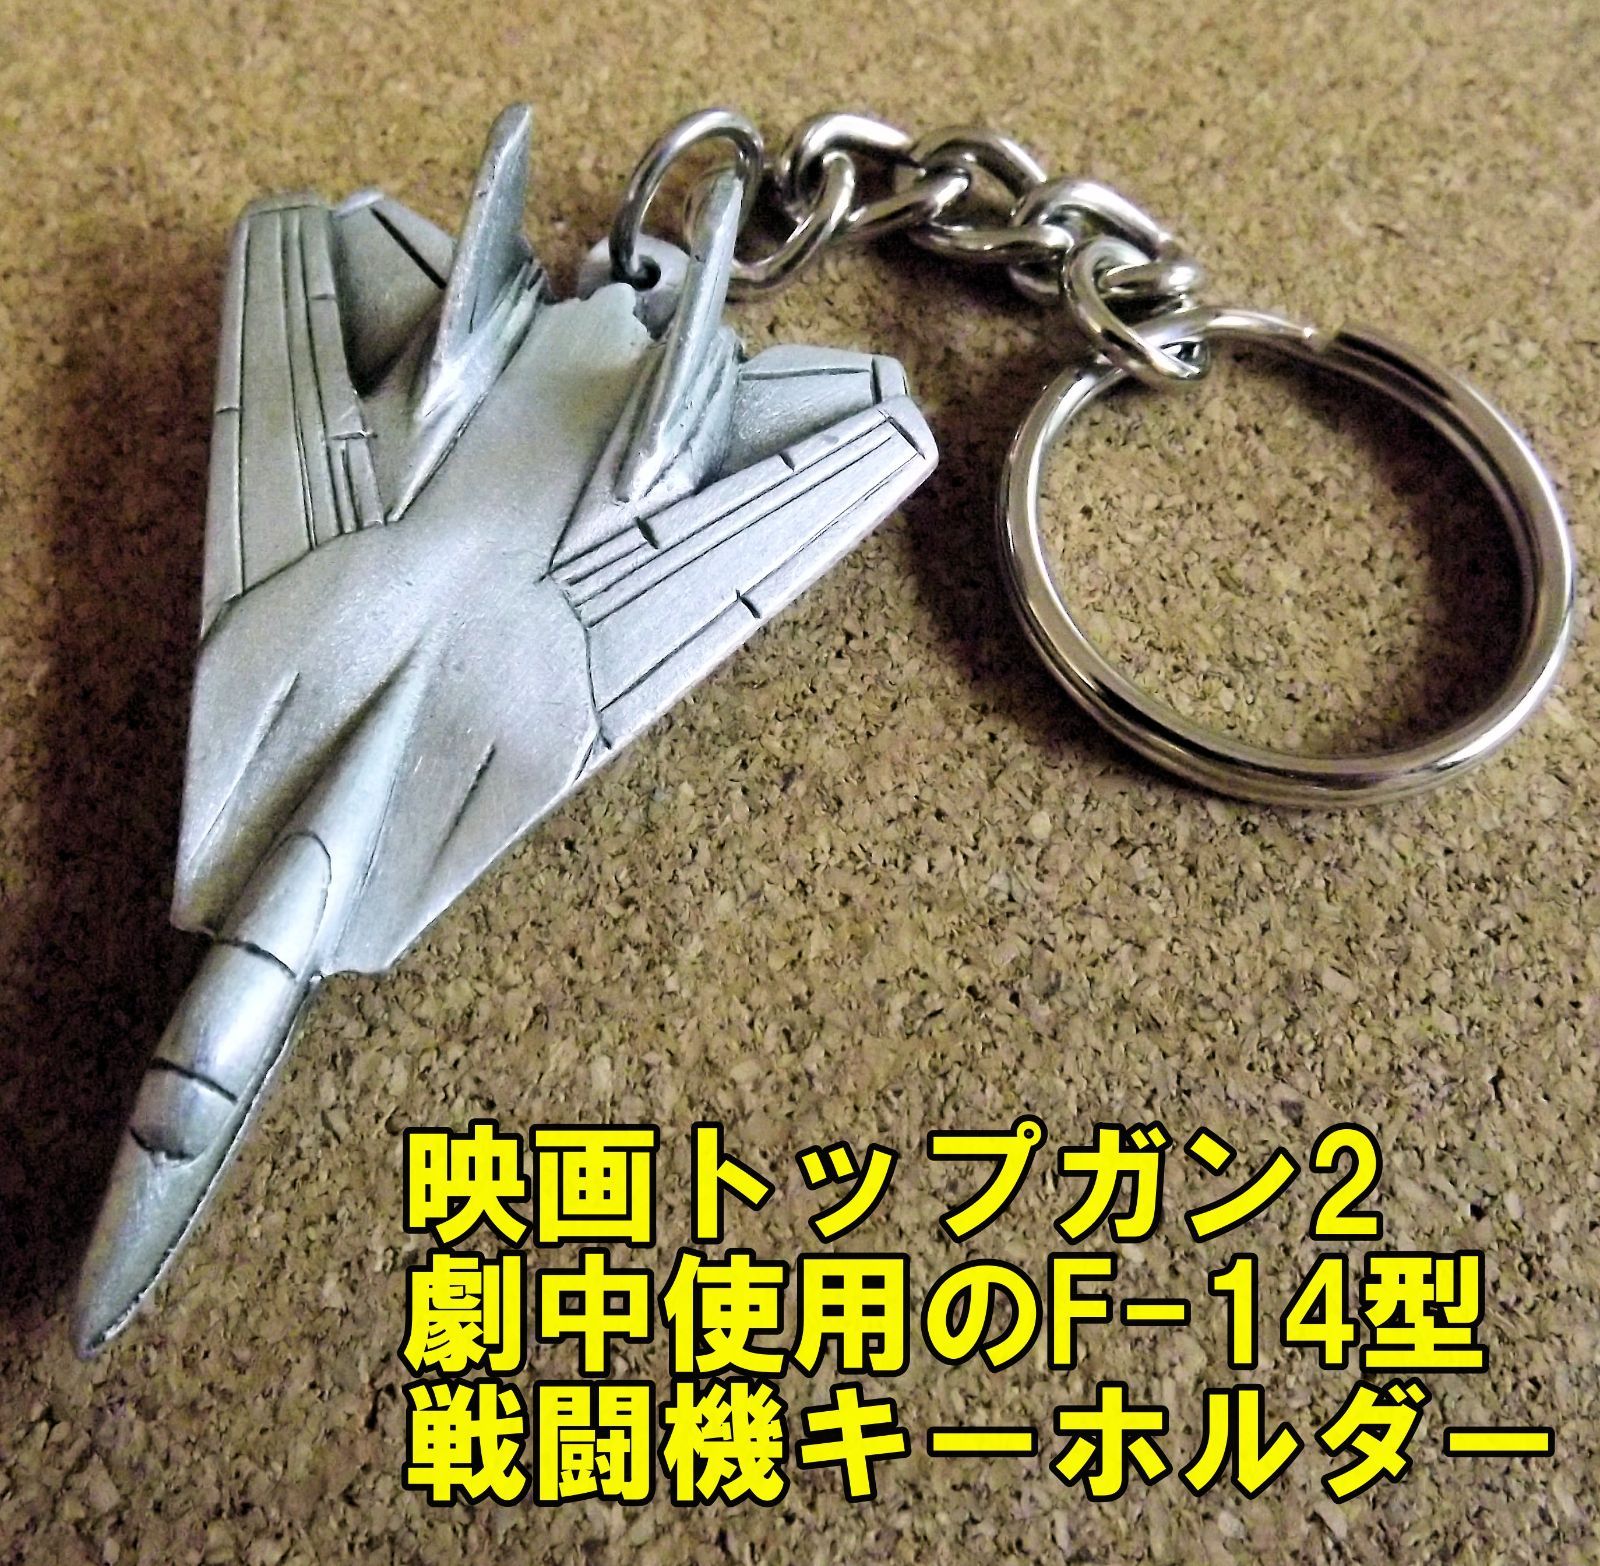 使い勝手の良い F-14トムキャットキーホルダーF14 general-bond.co.jp